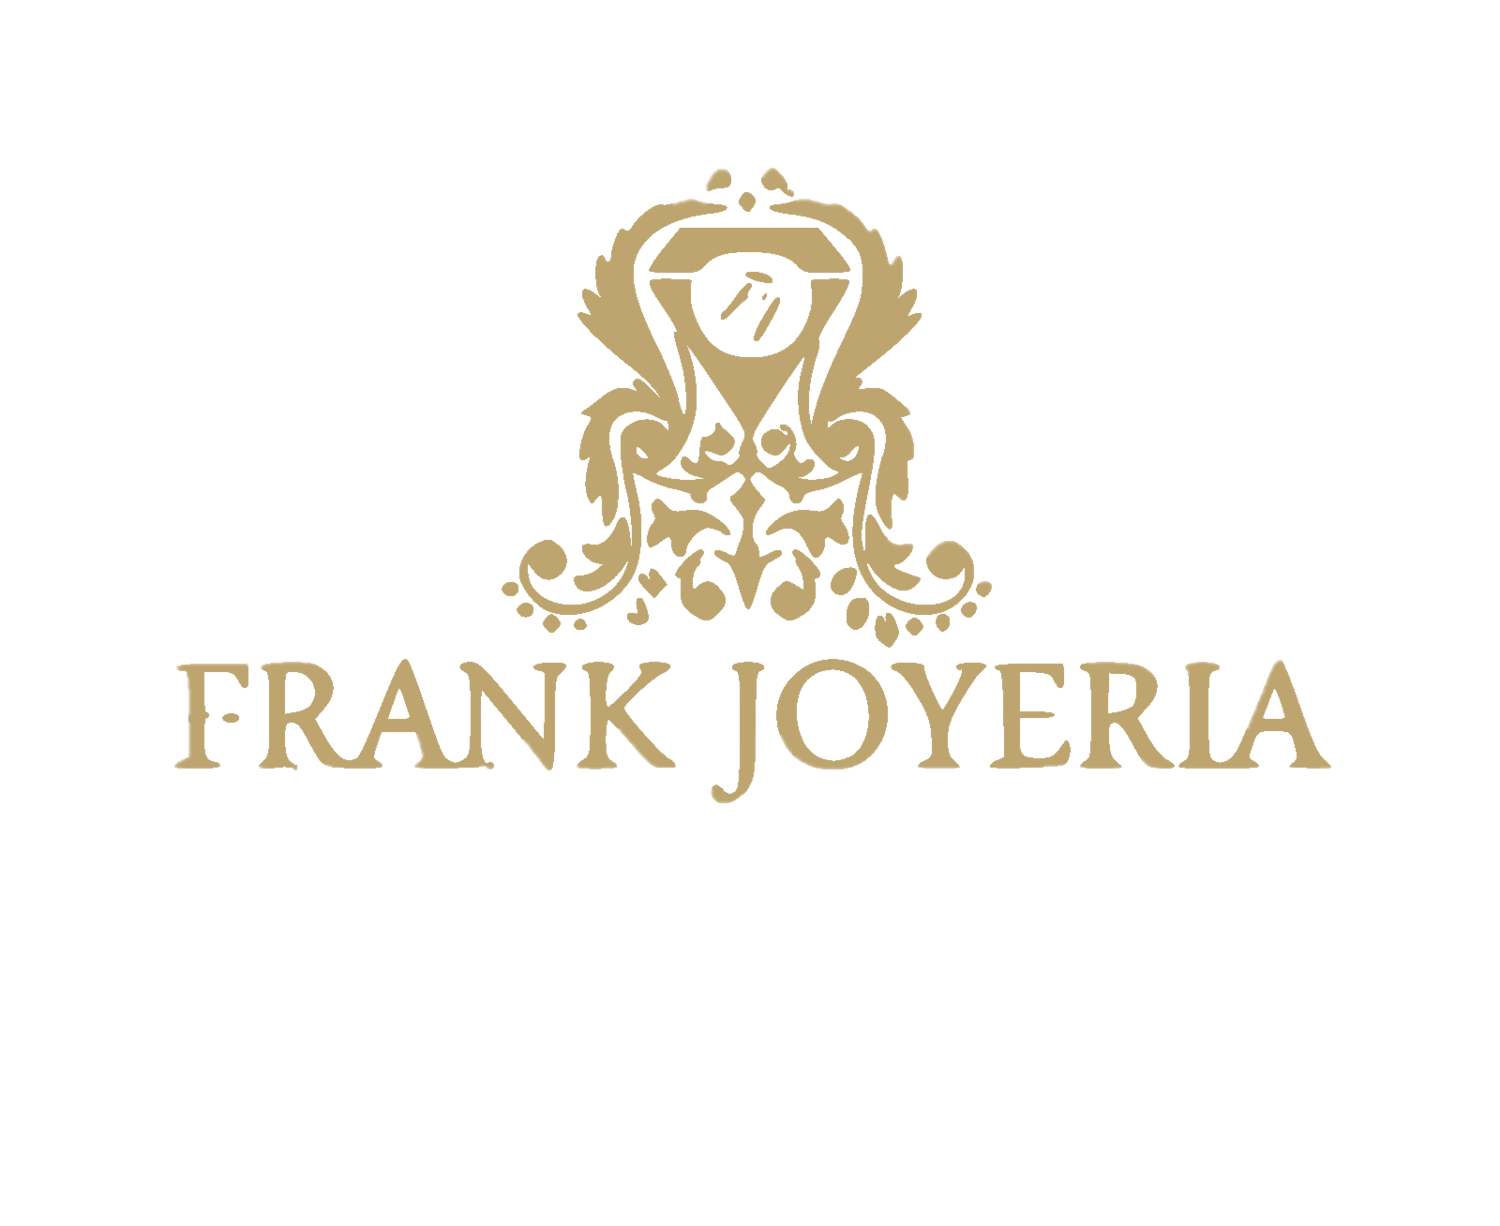 FRANK JOYERIA